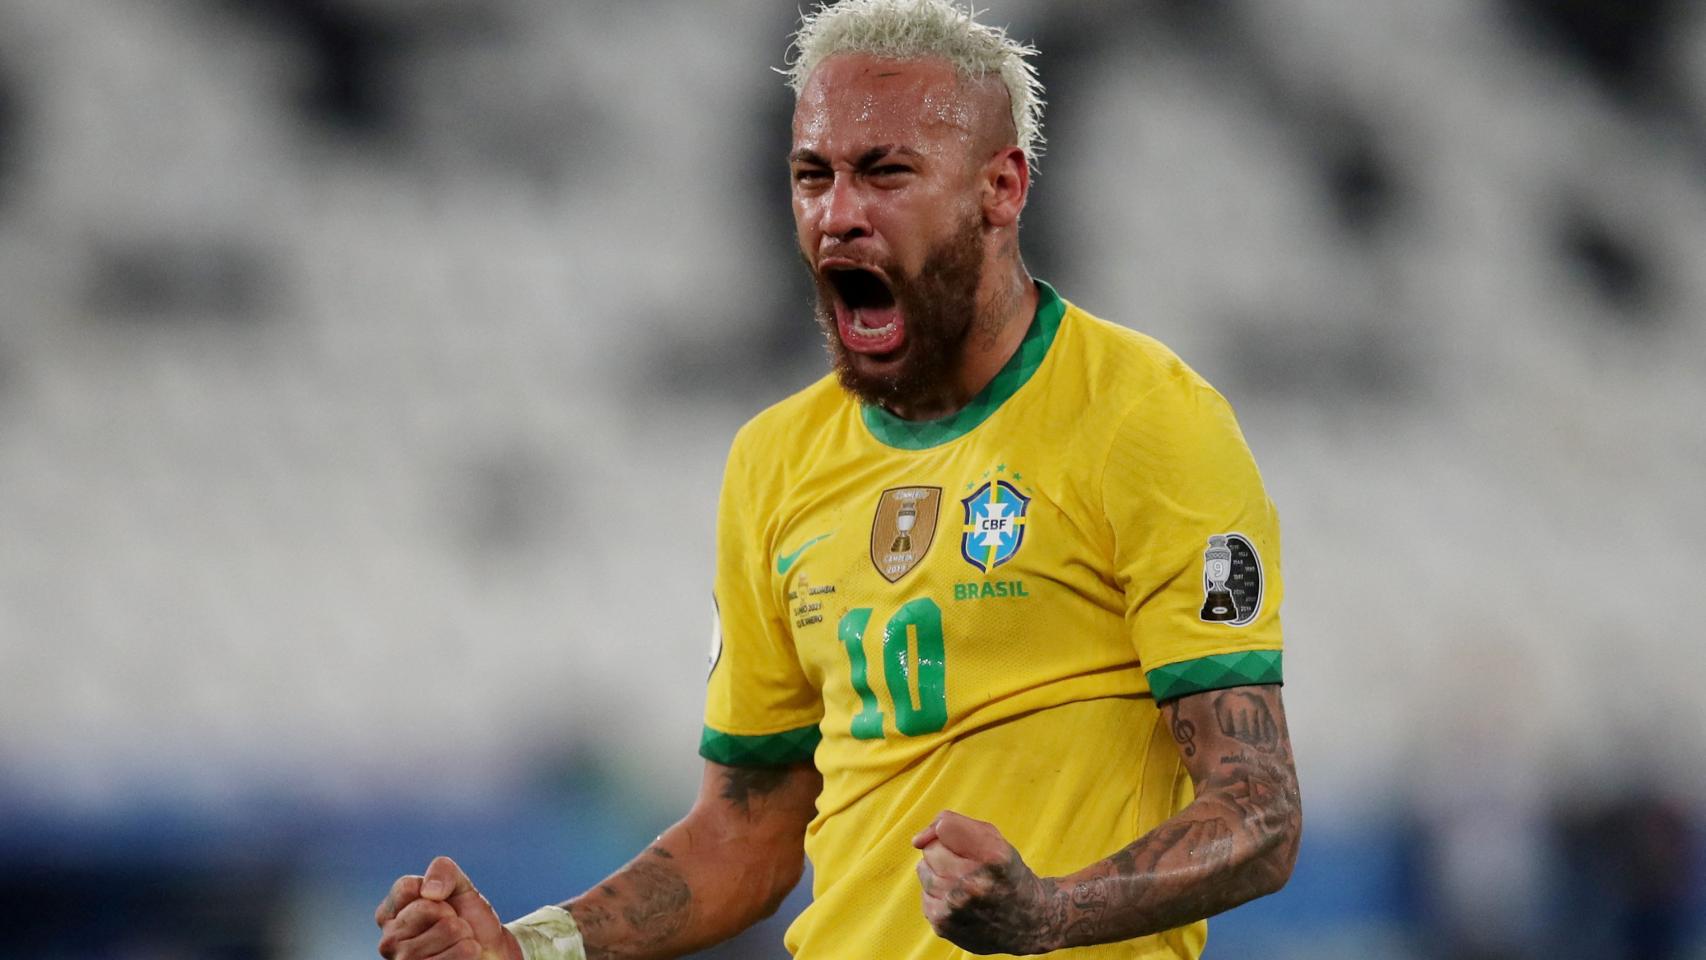 El Mundial de Neymar dos récords para ser el mejor de siempre en